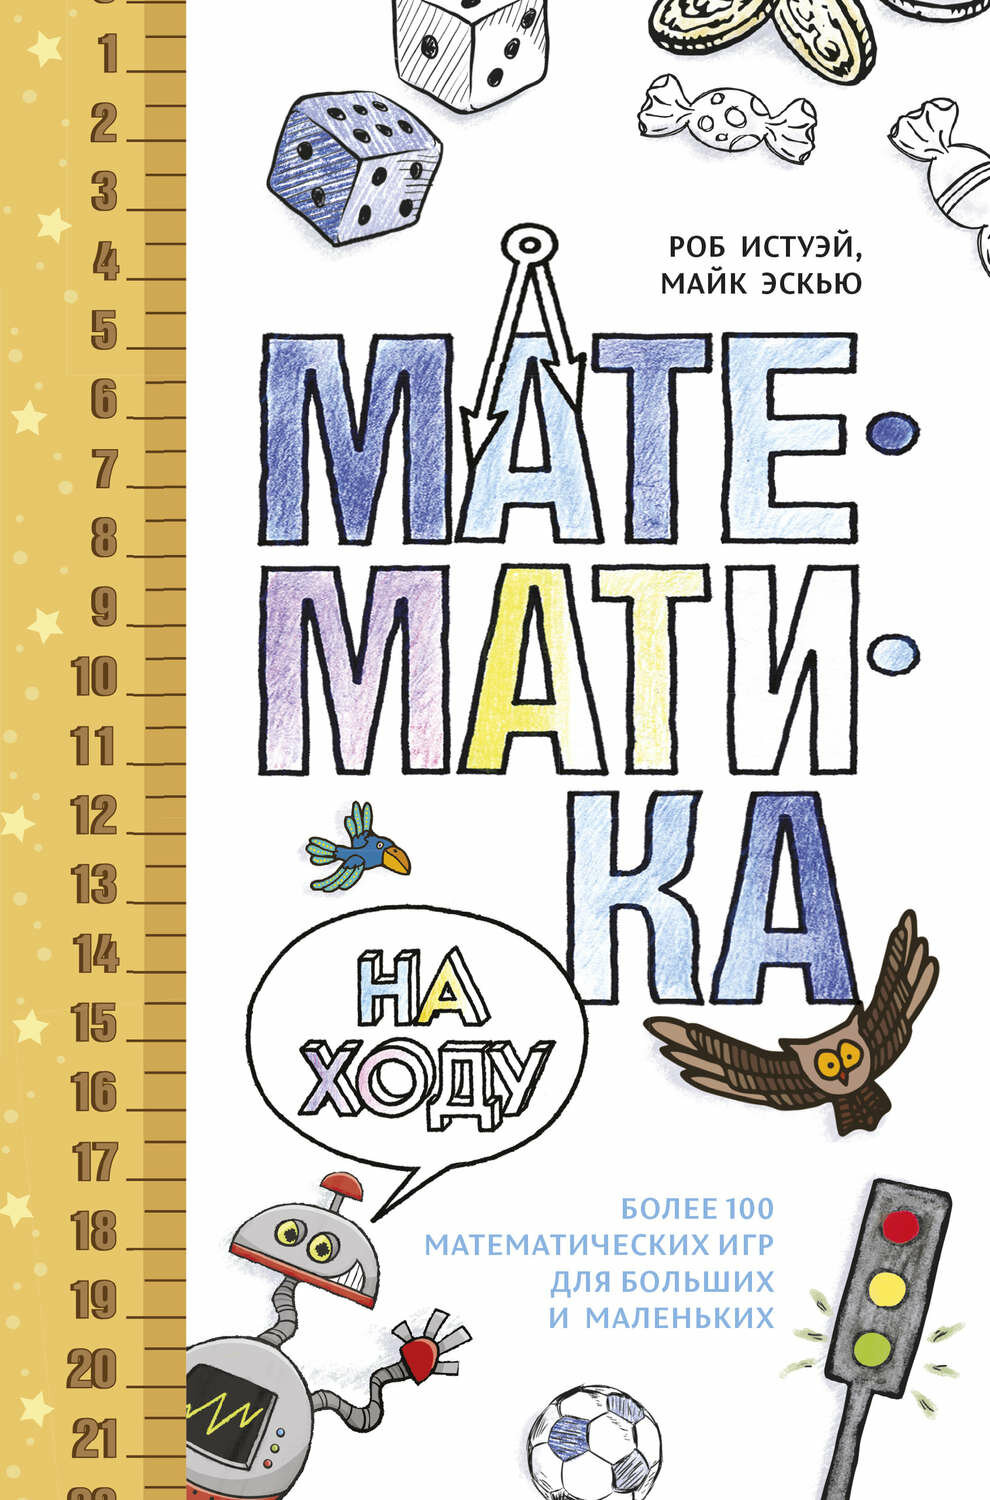 Истуэй Р. Математика на ходу. Более 100 математических игр для больших и маленьких. Полезные книги для родителей